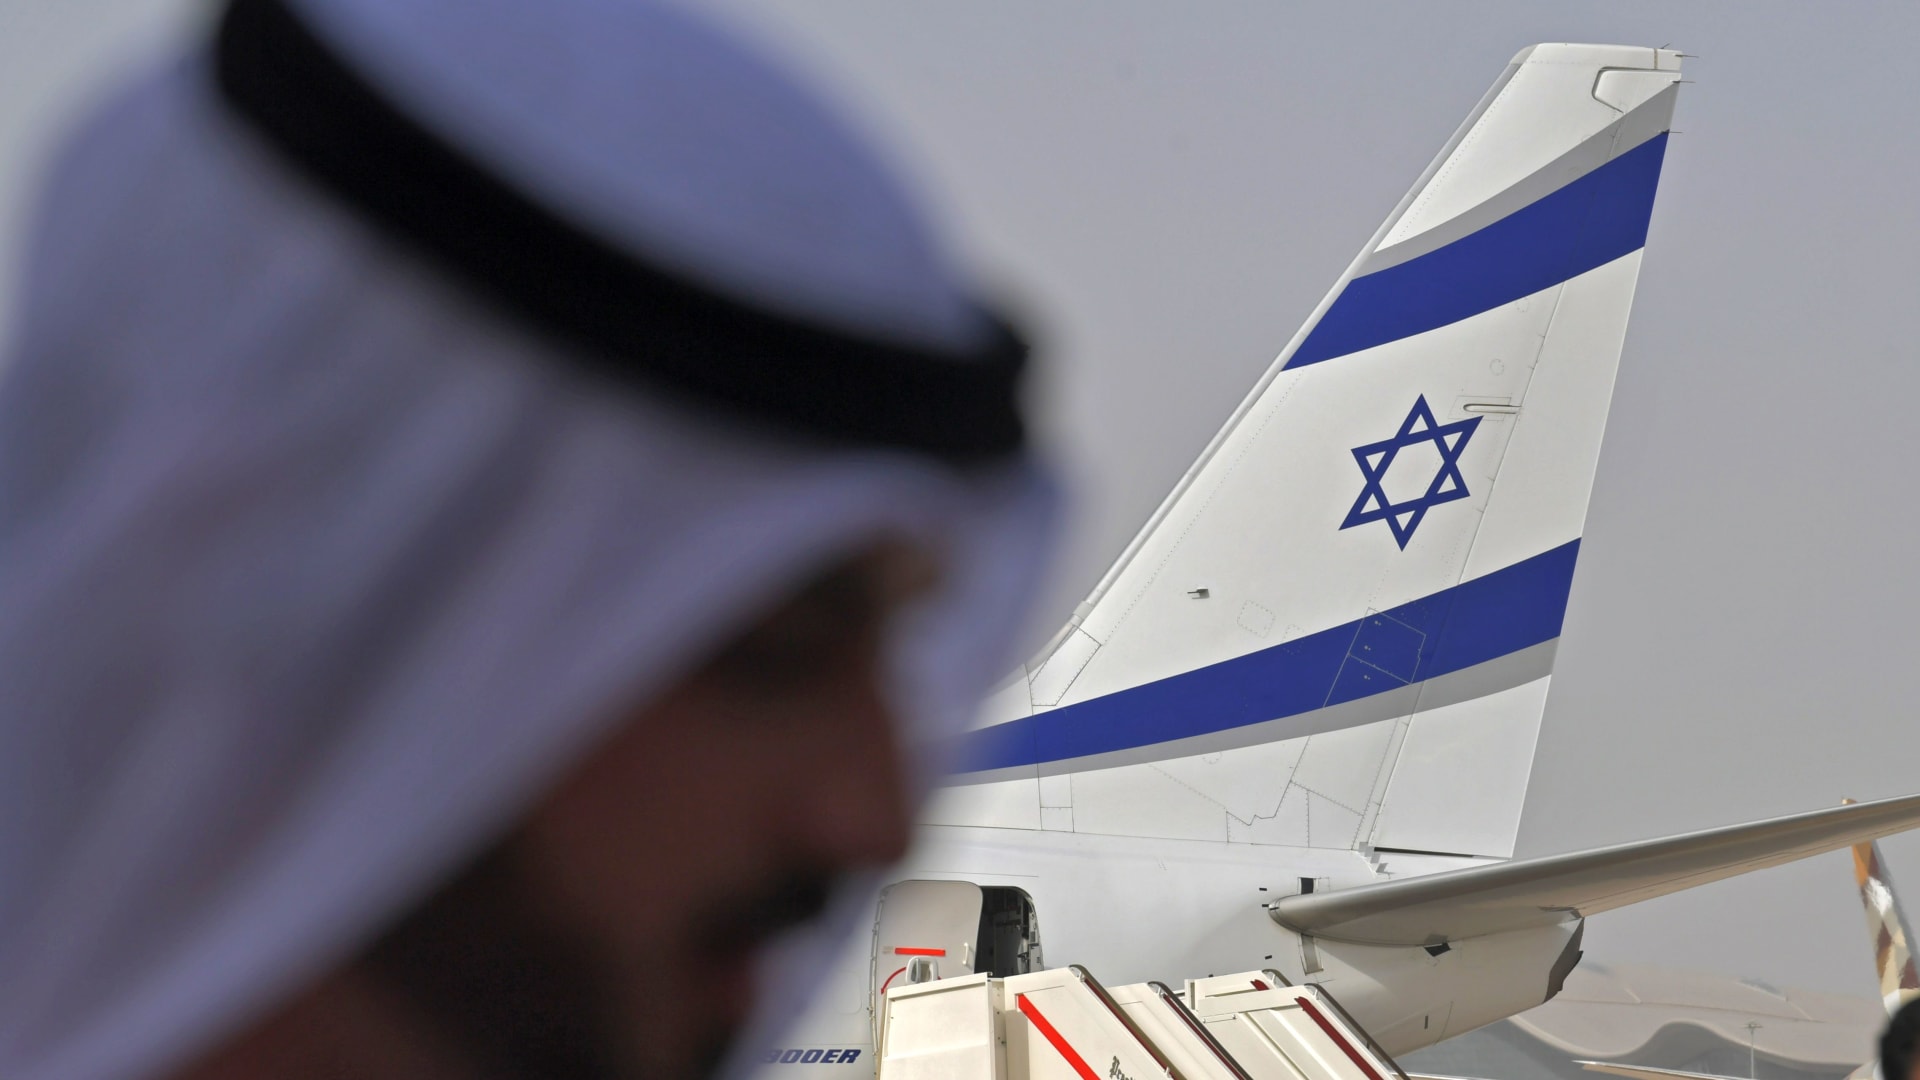 لحظة وصول الوفدين الأمريكي والإسرائيلي إلى أبوظبي على متن أول رحلة تجارية إسرائيلية إلى الإمارات